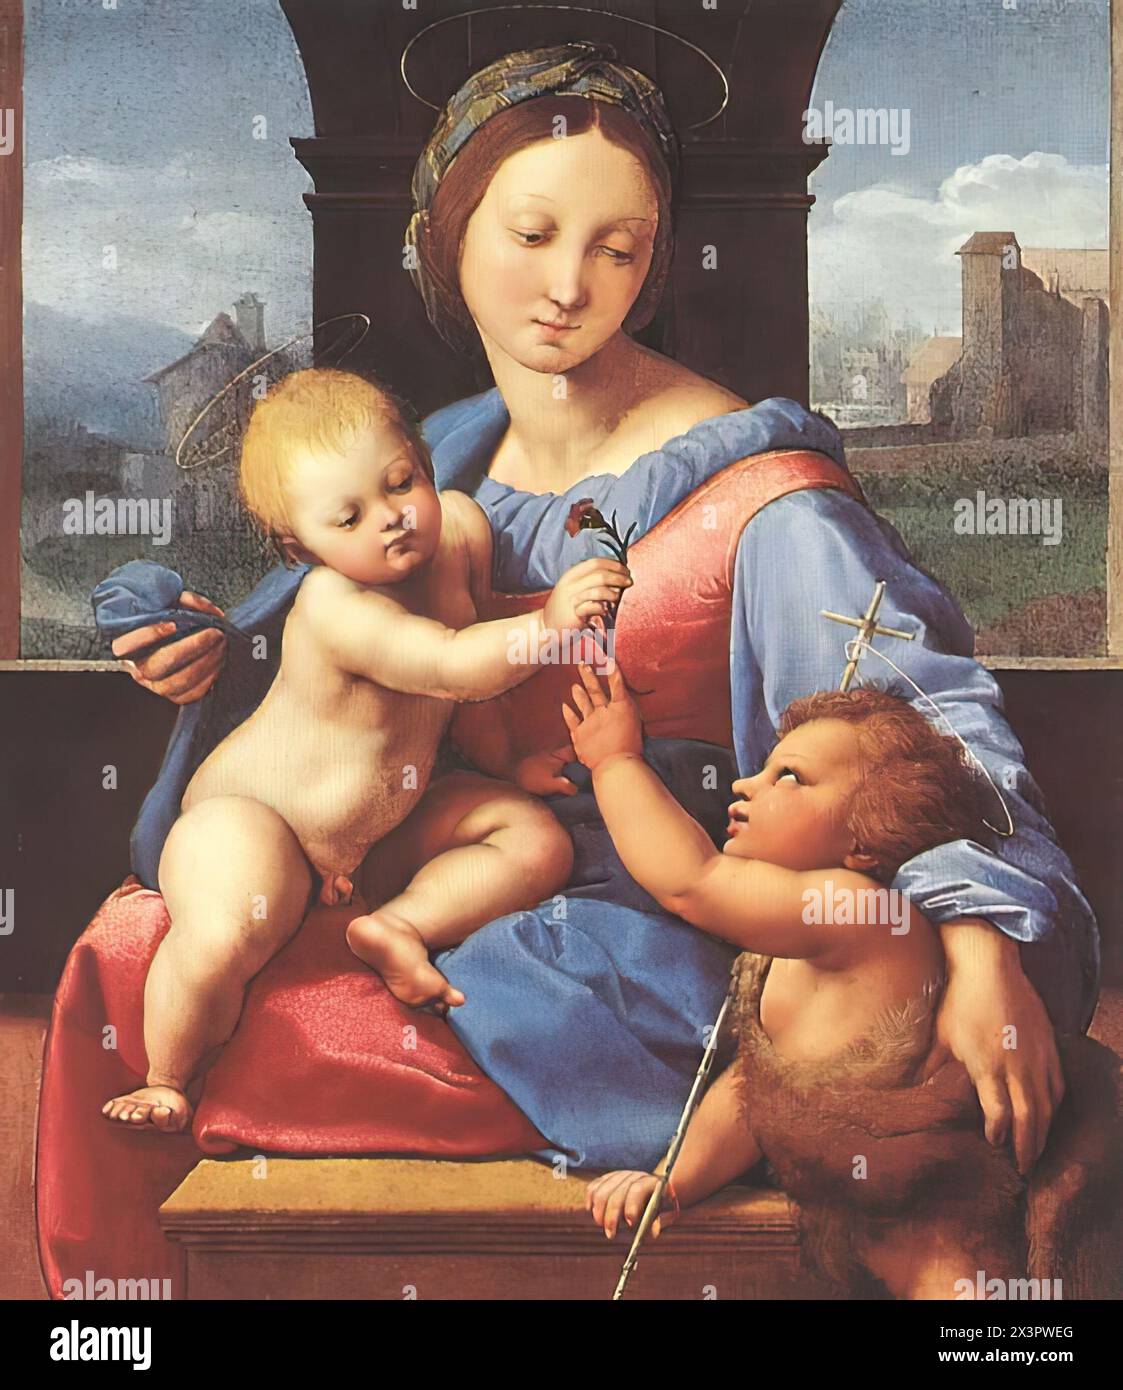 RAFFAELLO Sanzio (né en 1483, Urbino, mort en 1520, Roma) Aldobrandini Madonna (Garvagh Madonna) 1510 huile sur bois, 38,7 x 32,7 cm National Gallery, Londres la peinture était en possession de la famille Aldobrandini, puis au XIXe siècle elle était en Angleterre, dans la collection de Lord Garvagh. Le fond de la peinture montre probablement un paysage près de Rome. --- mots-clés : ------------- Auteur : RAFFAELLO Sanzio titre : Aldobrandini Madonna (Garvagh Madonna) chronologie : 1501-1550 École : Italien forme : peinture type : religieux Banque D'Images